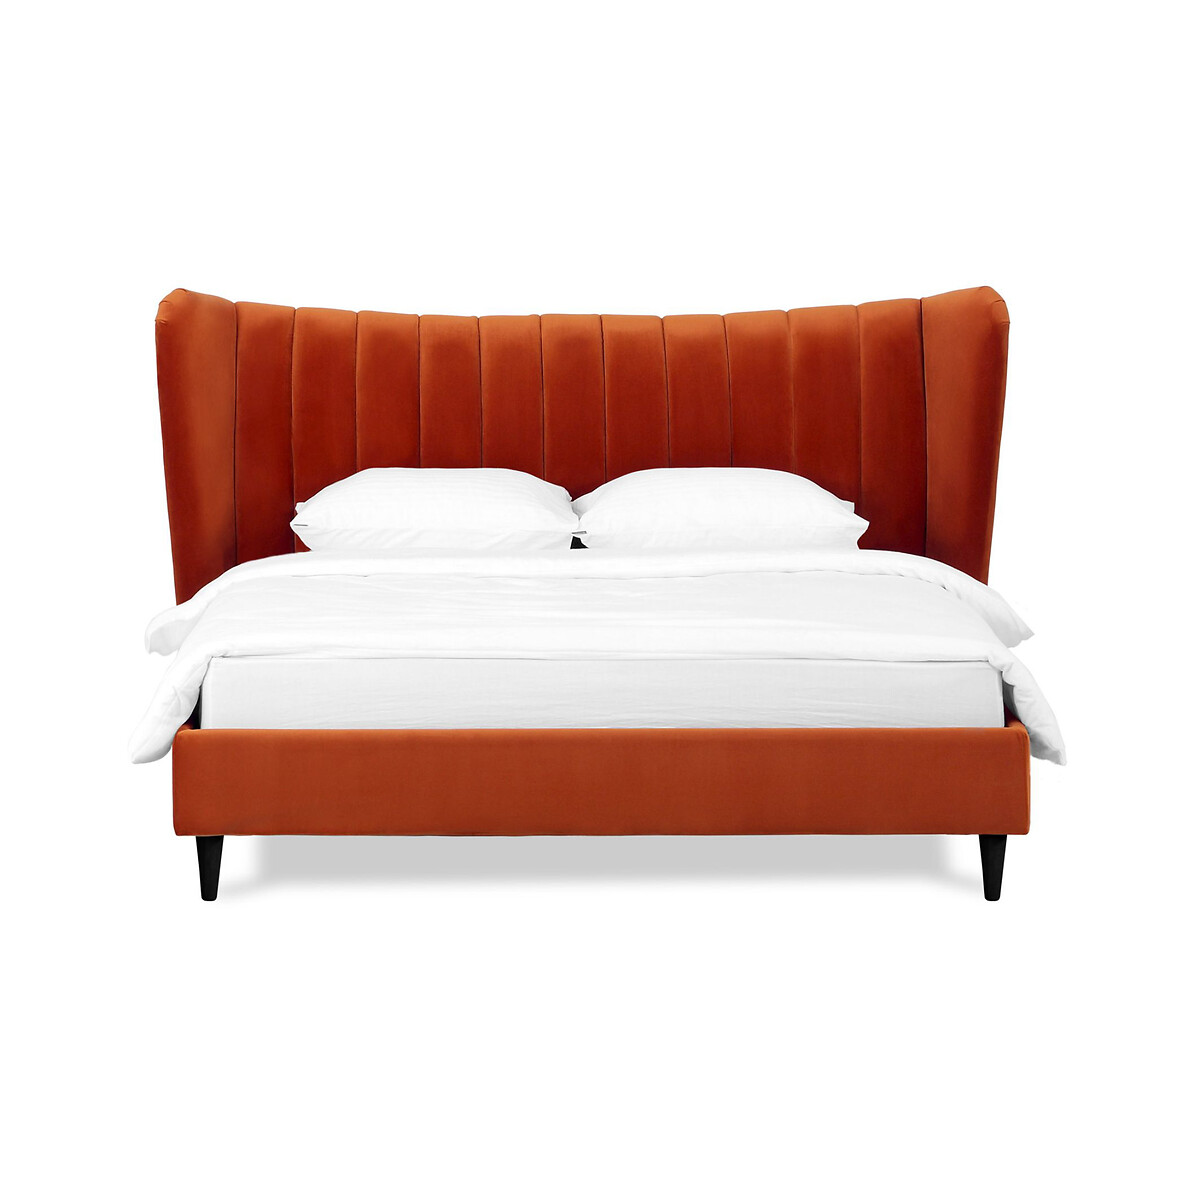 Кровать Queen II Agata L 160 x 200 см оранжевый LaRedoute, размер 160 x 200 см - фото 2